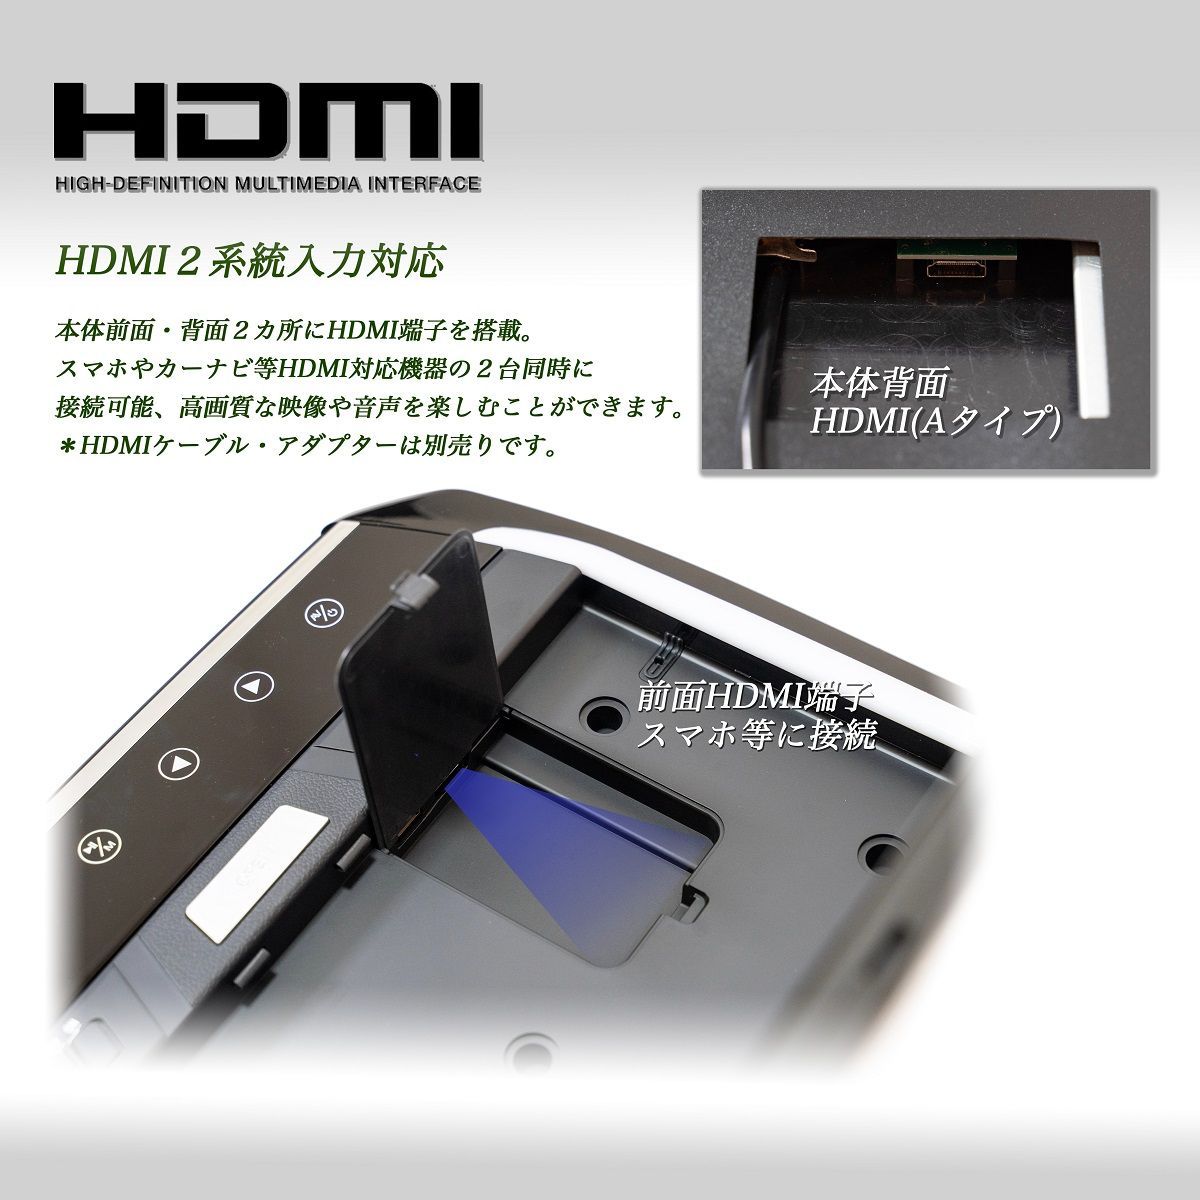 C28系 セレナ ハイウェイスター 13.3インチフリップダウンモニター 日産 ニッサン 車載用 HDMI RCA USB SD - メルカリ